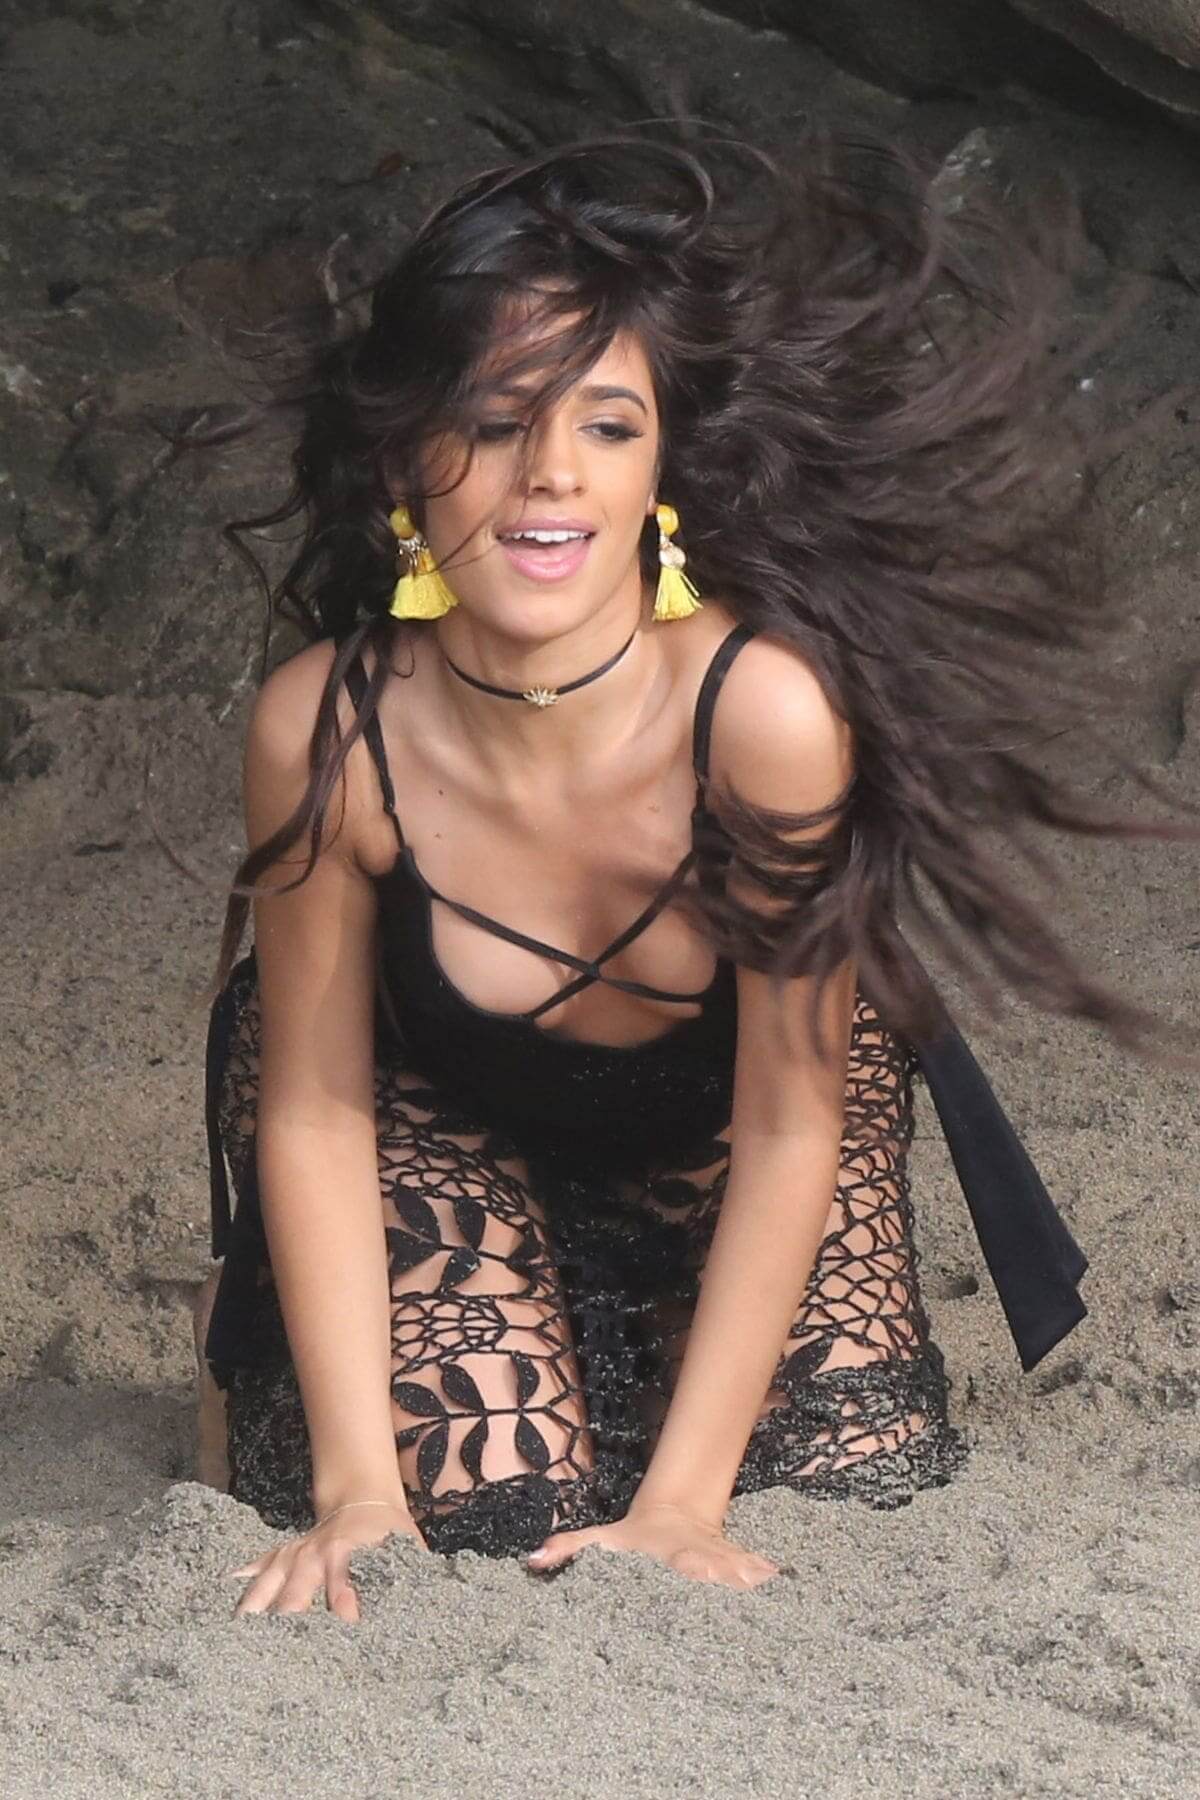 The Hottest Photos Of Camila Cabello.